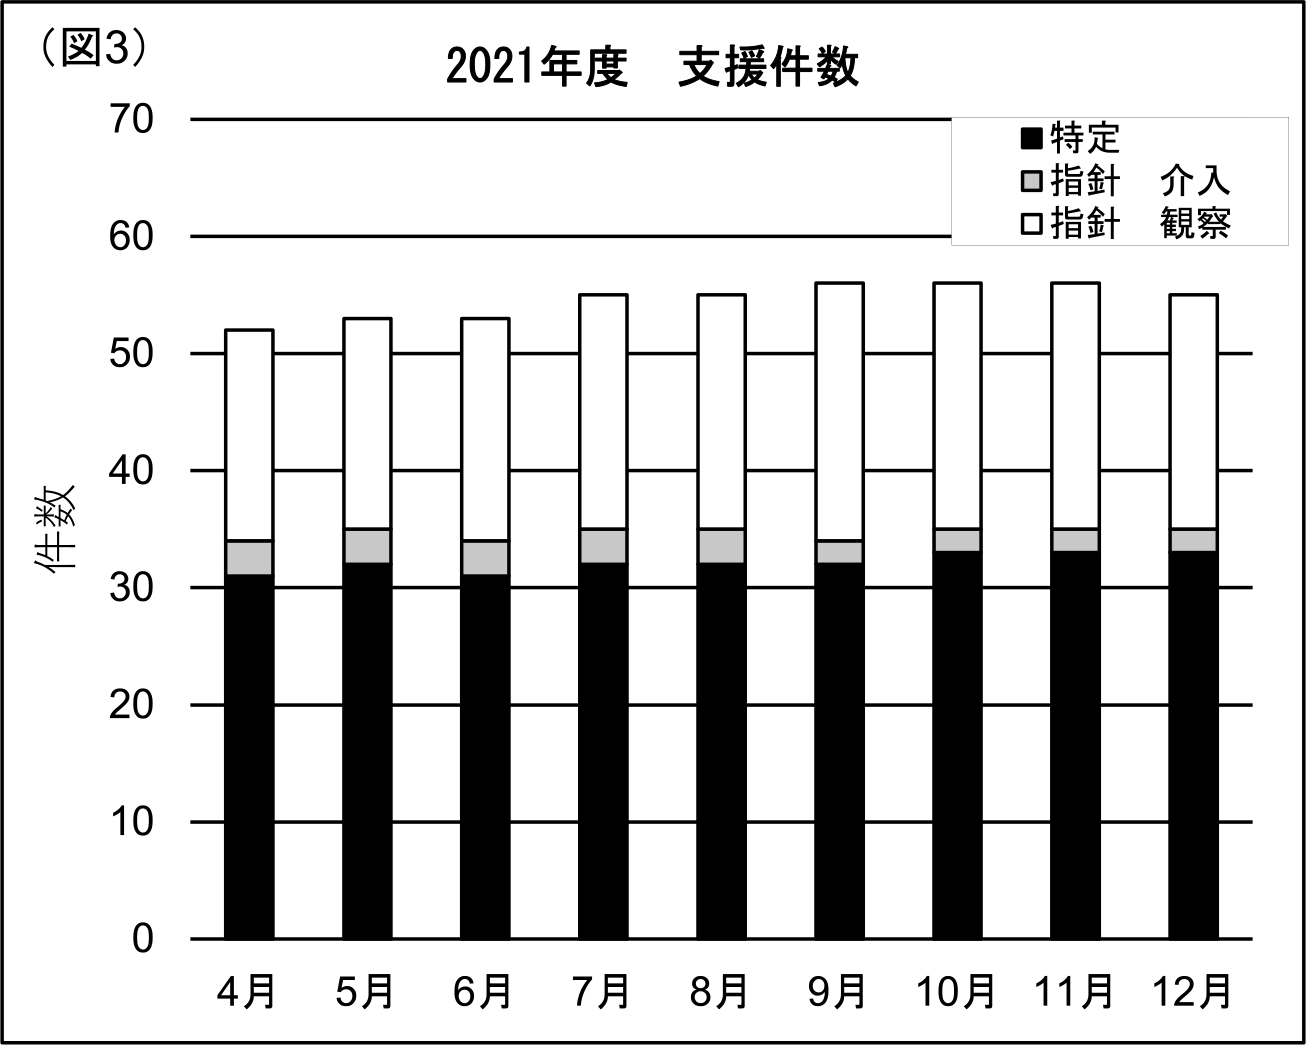 図３．2021年度月別支援件数（研究）